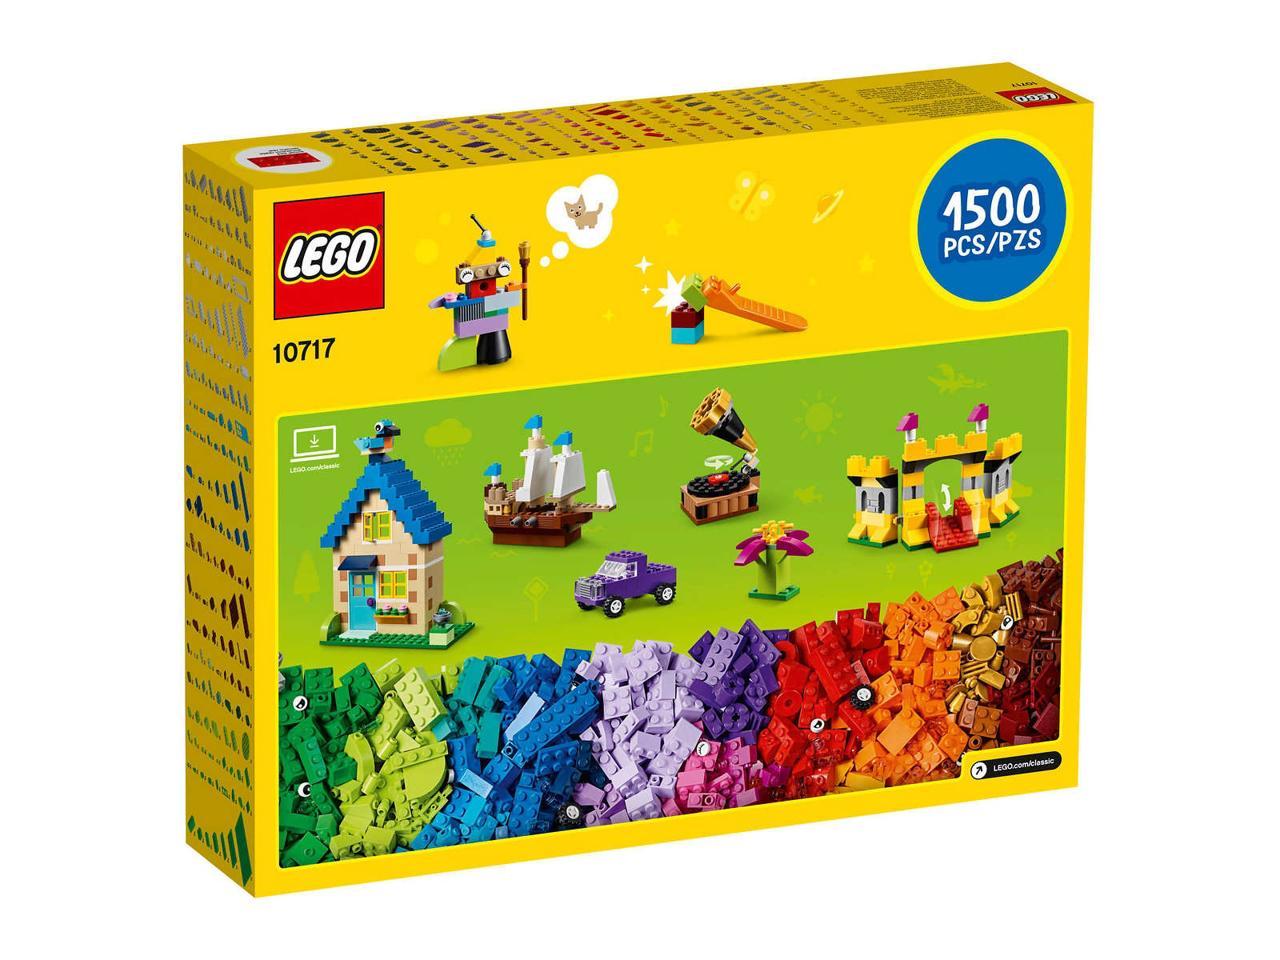 Lego 2 GREEN BRICKS 12 X 24 DOT PLATFORMS PLATES PIECES BUILDING BLOCKS PARTS 